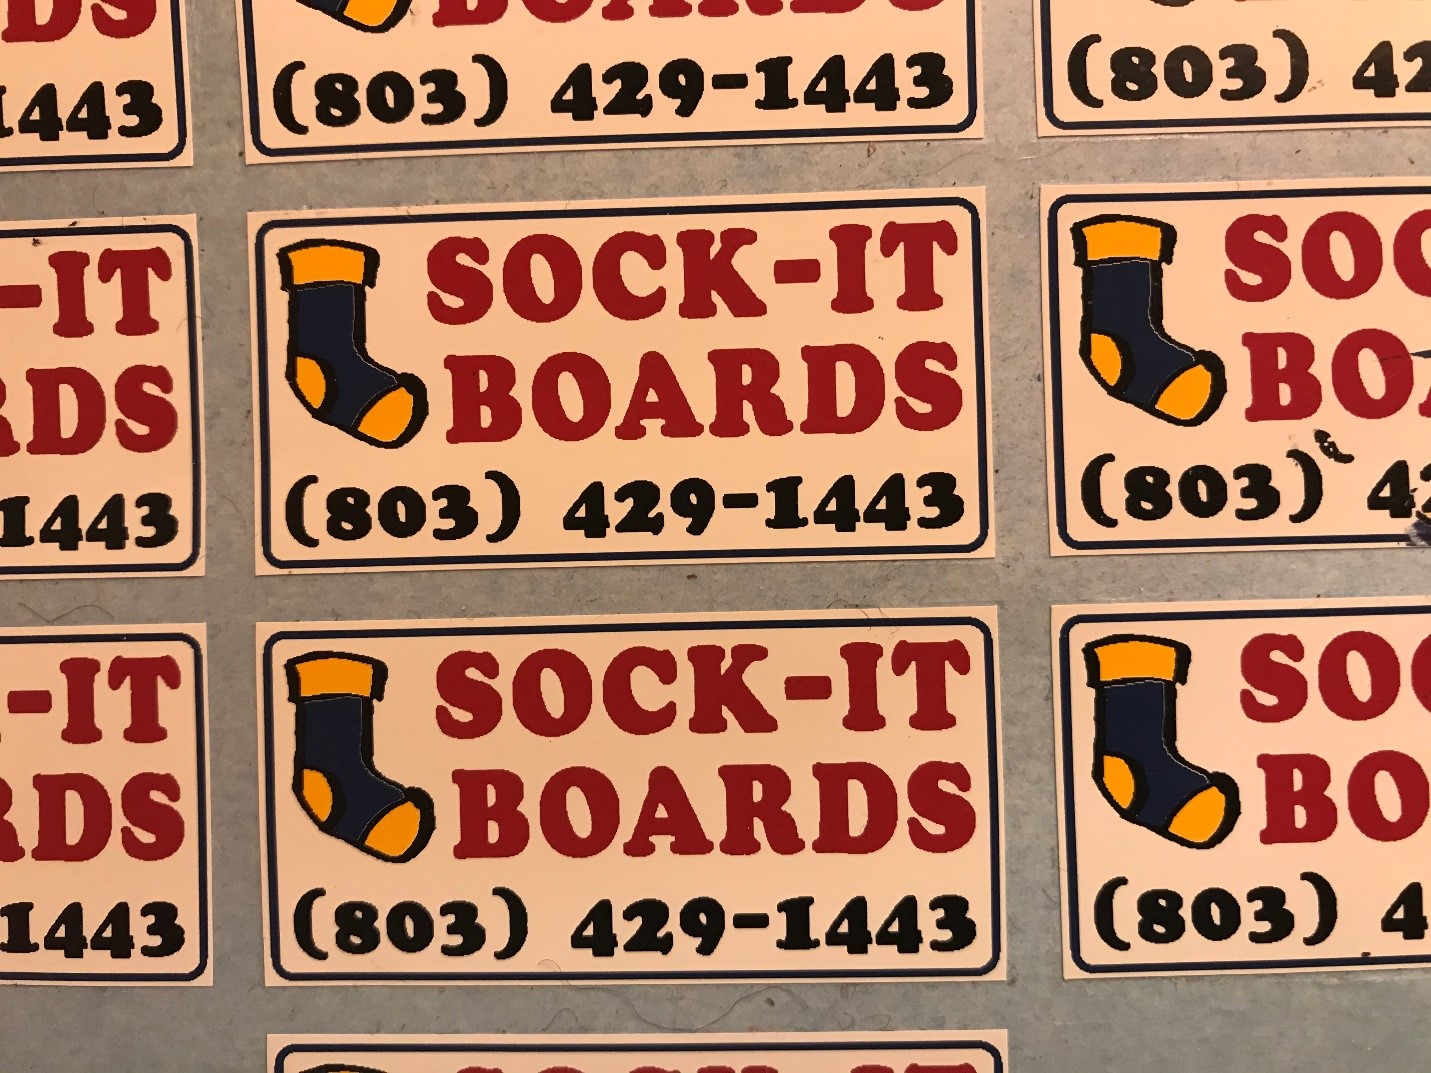 Sock-It Boards